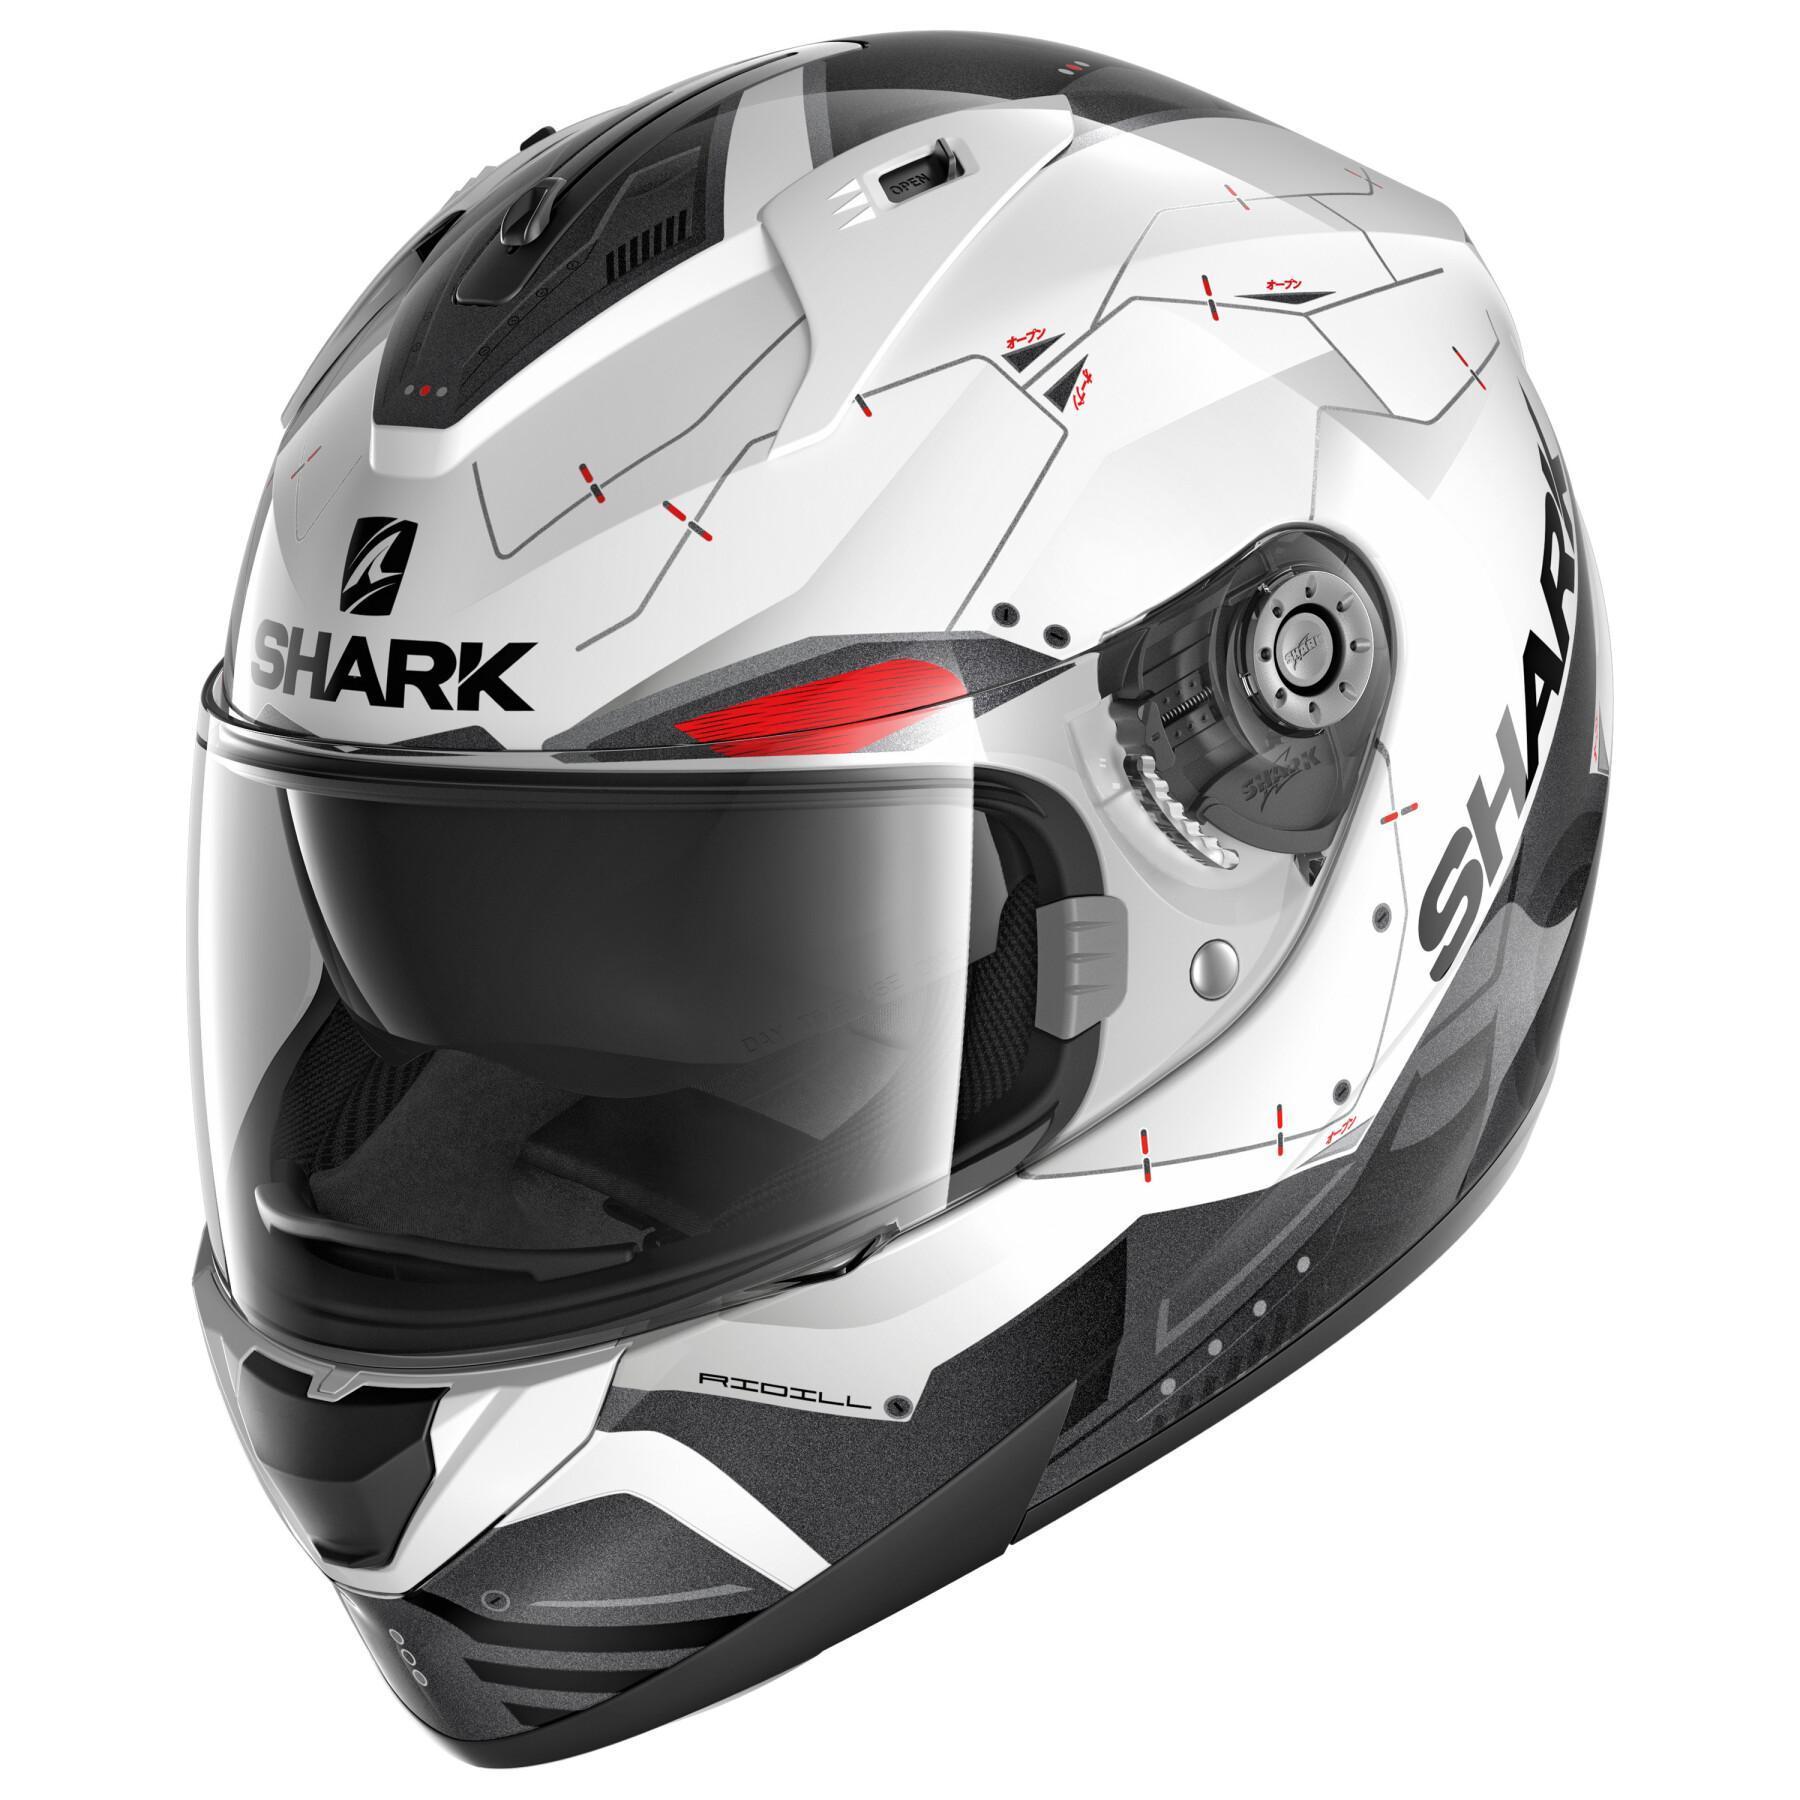 Full face motorcycle helmet Shark ridill 1.2 mecca